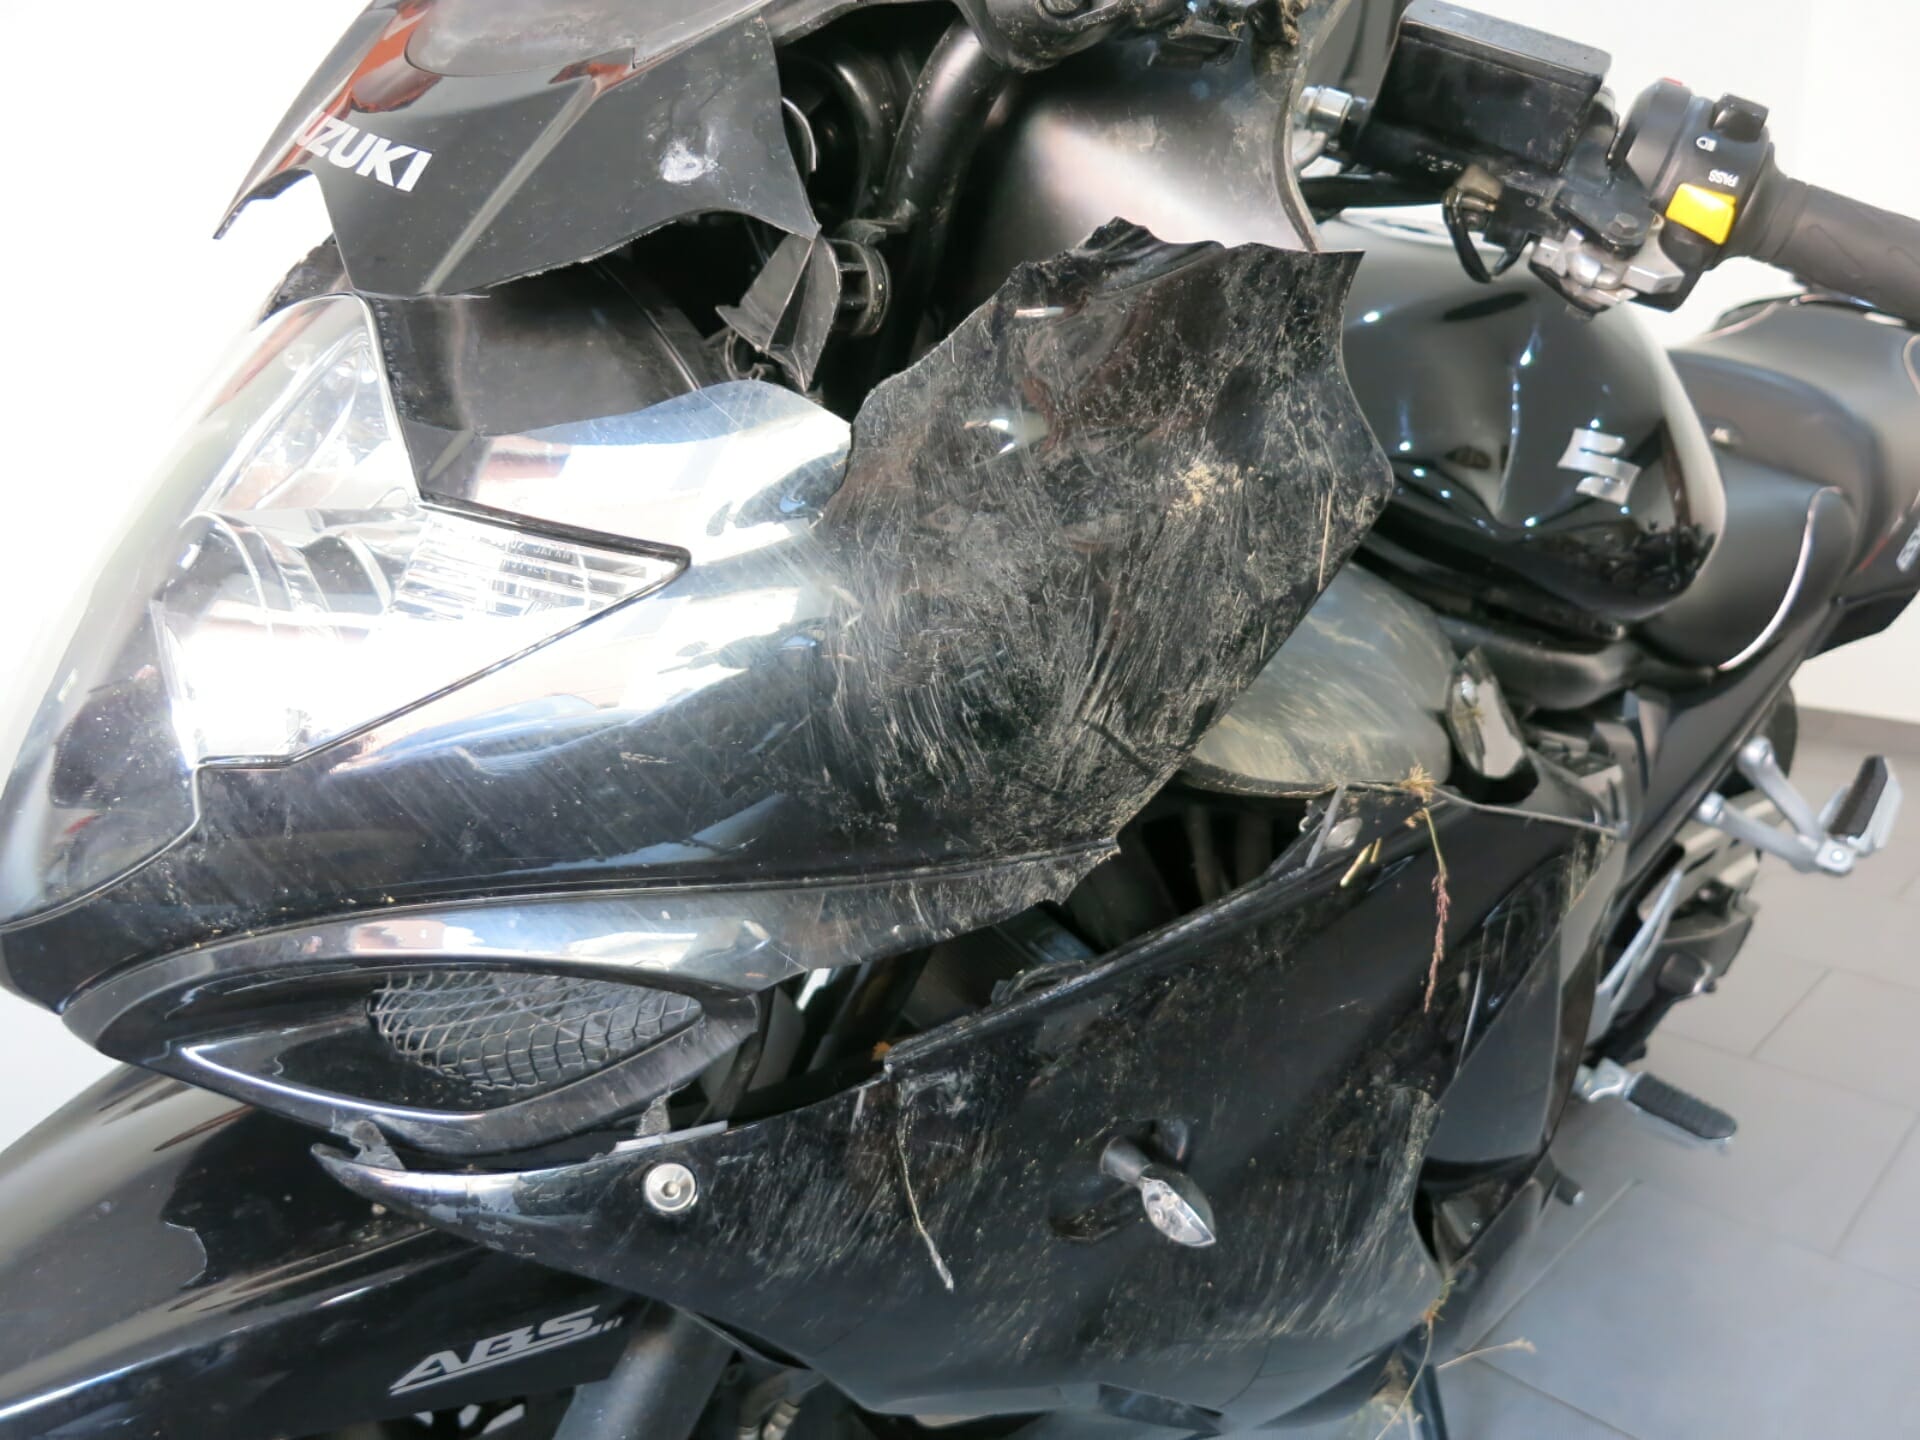 Nach einem Unfall mit dem Motorrad – Reparieren oder Verkaufen?